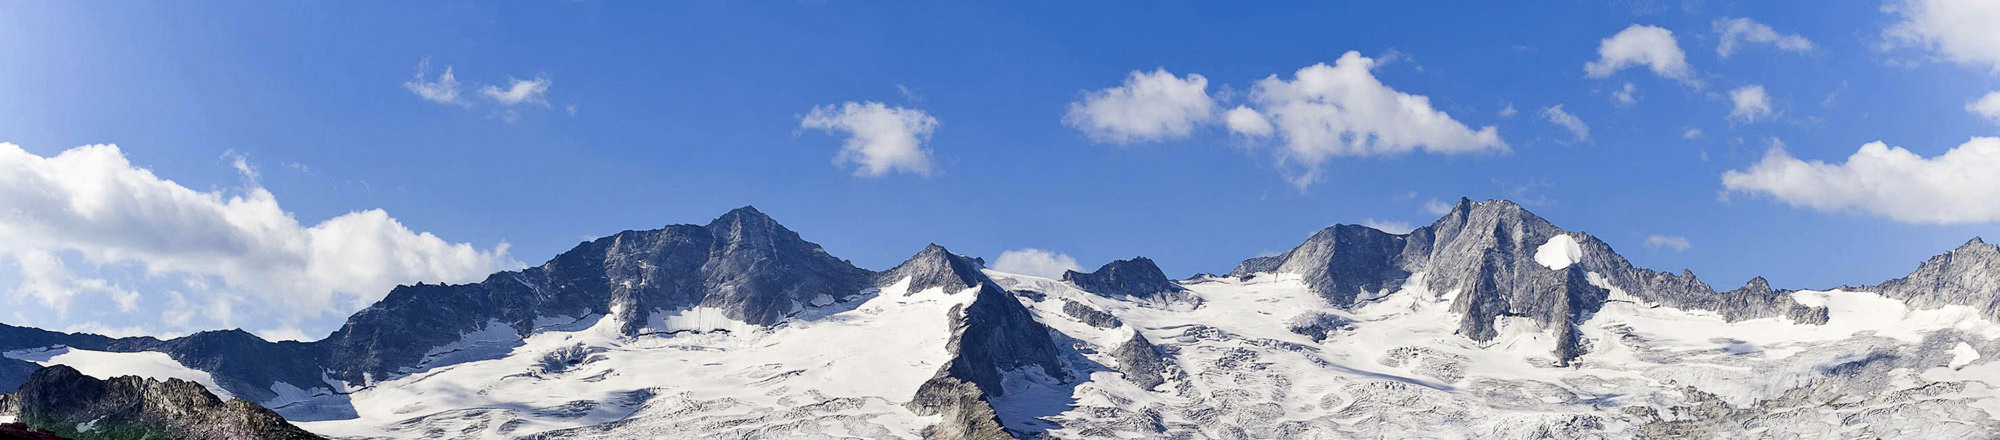 Blick auf die schneebedeckten Berge des Zillertales